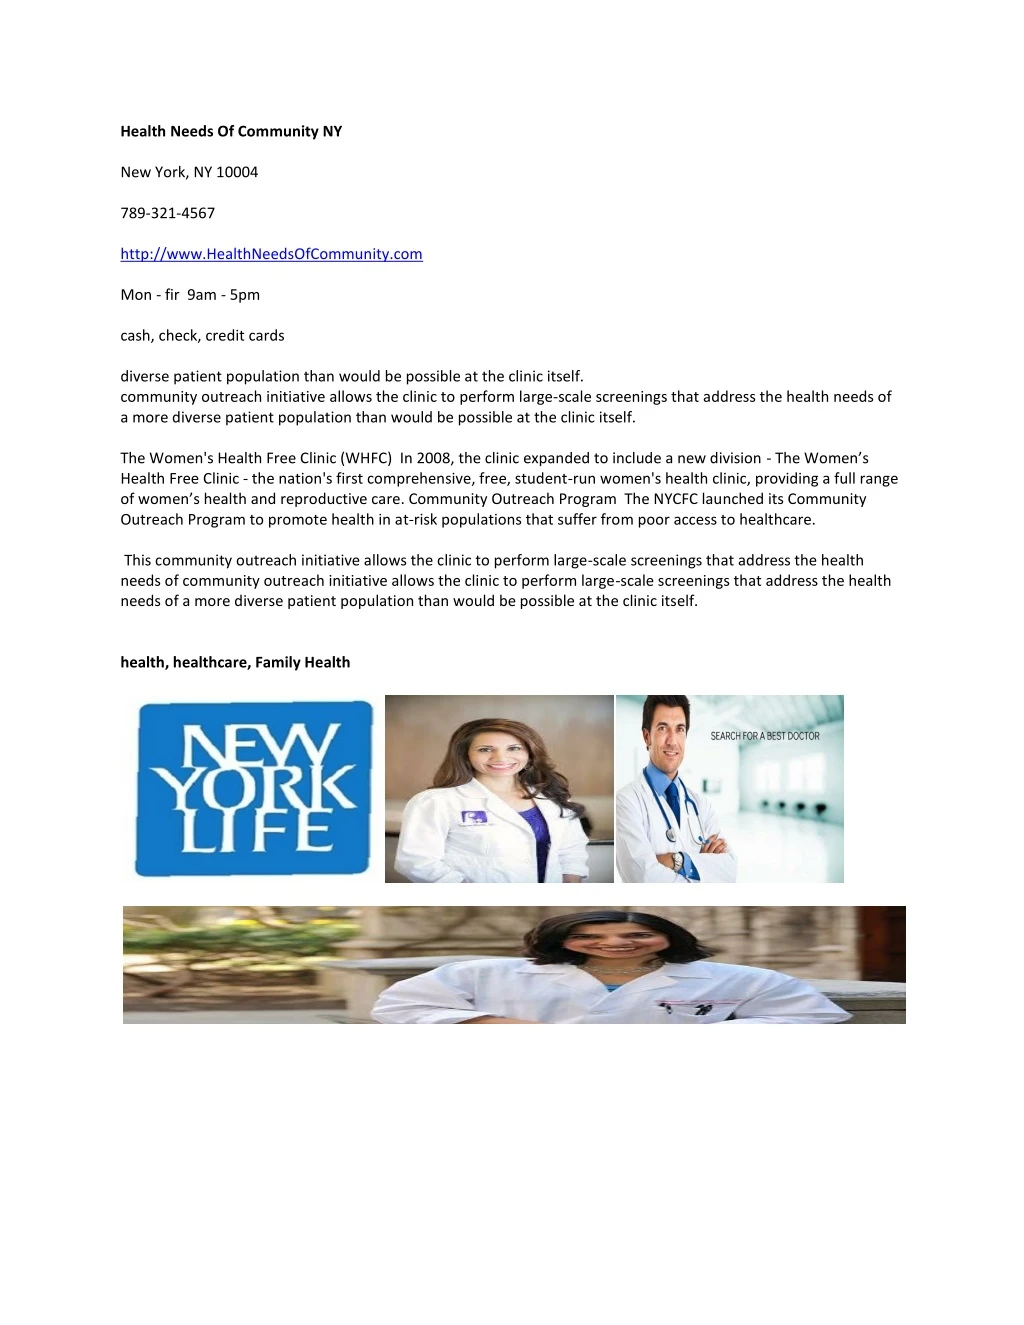 health needs of community ny new york ny 10004